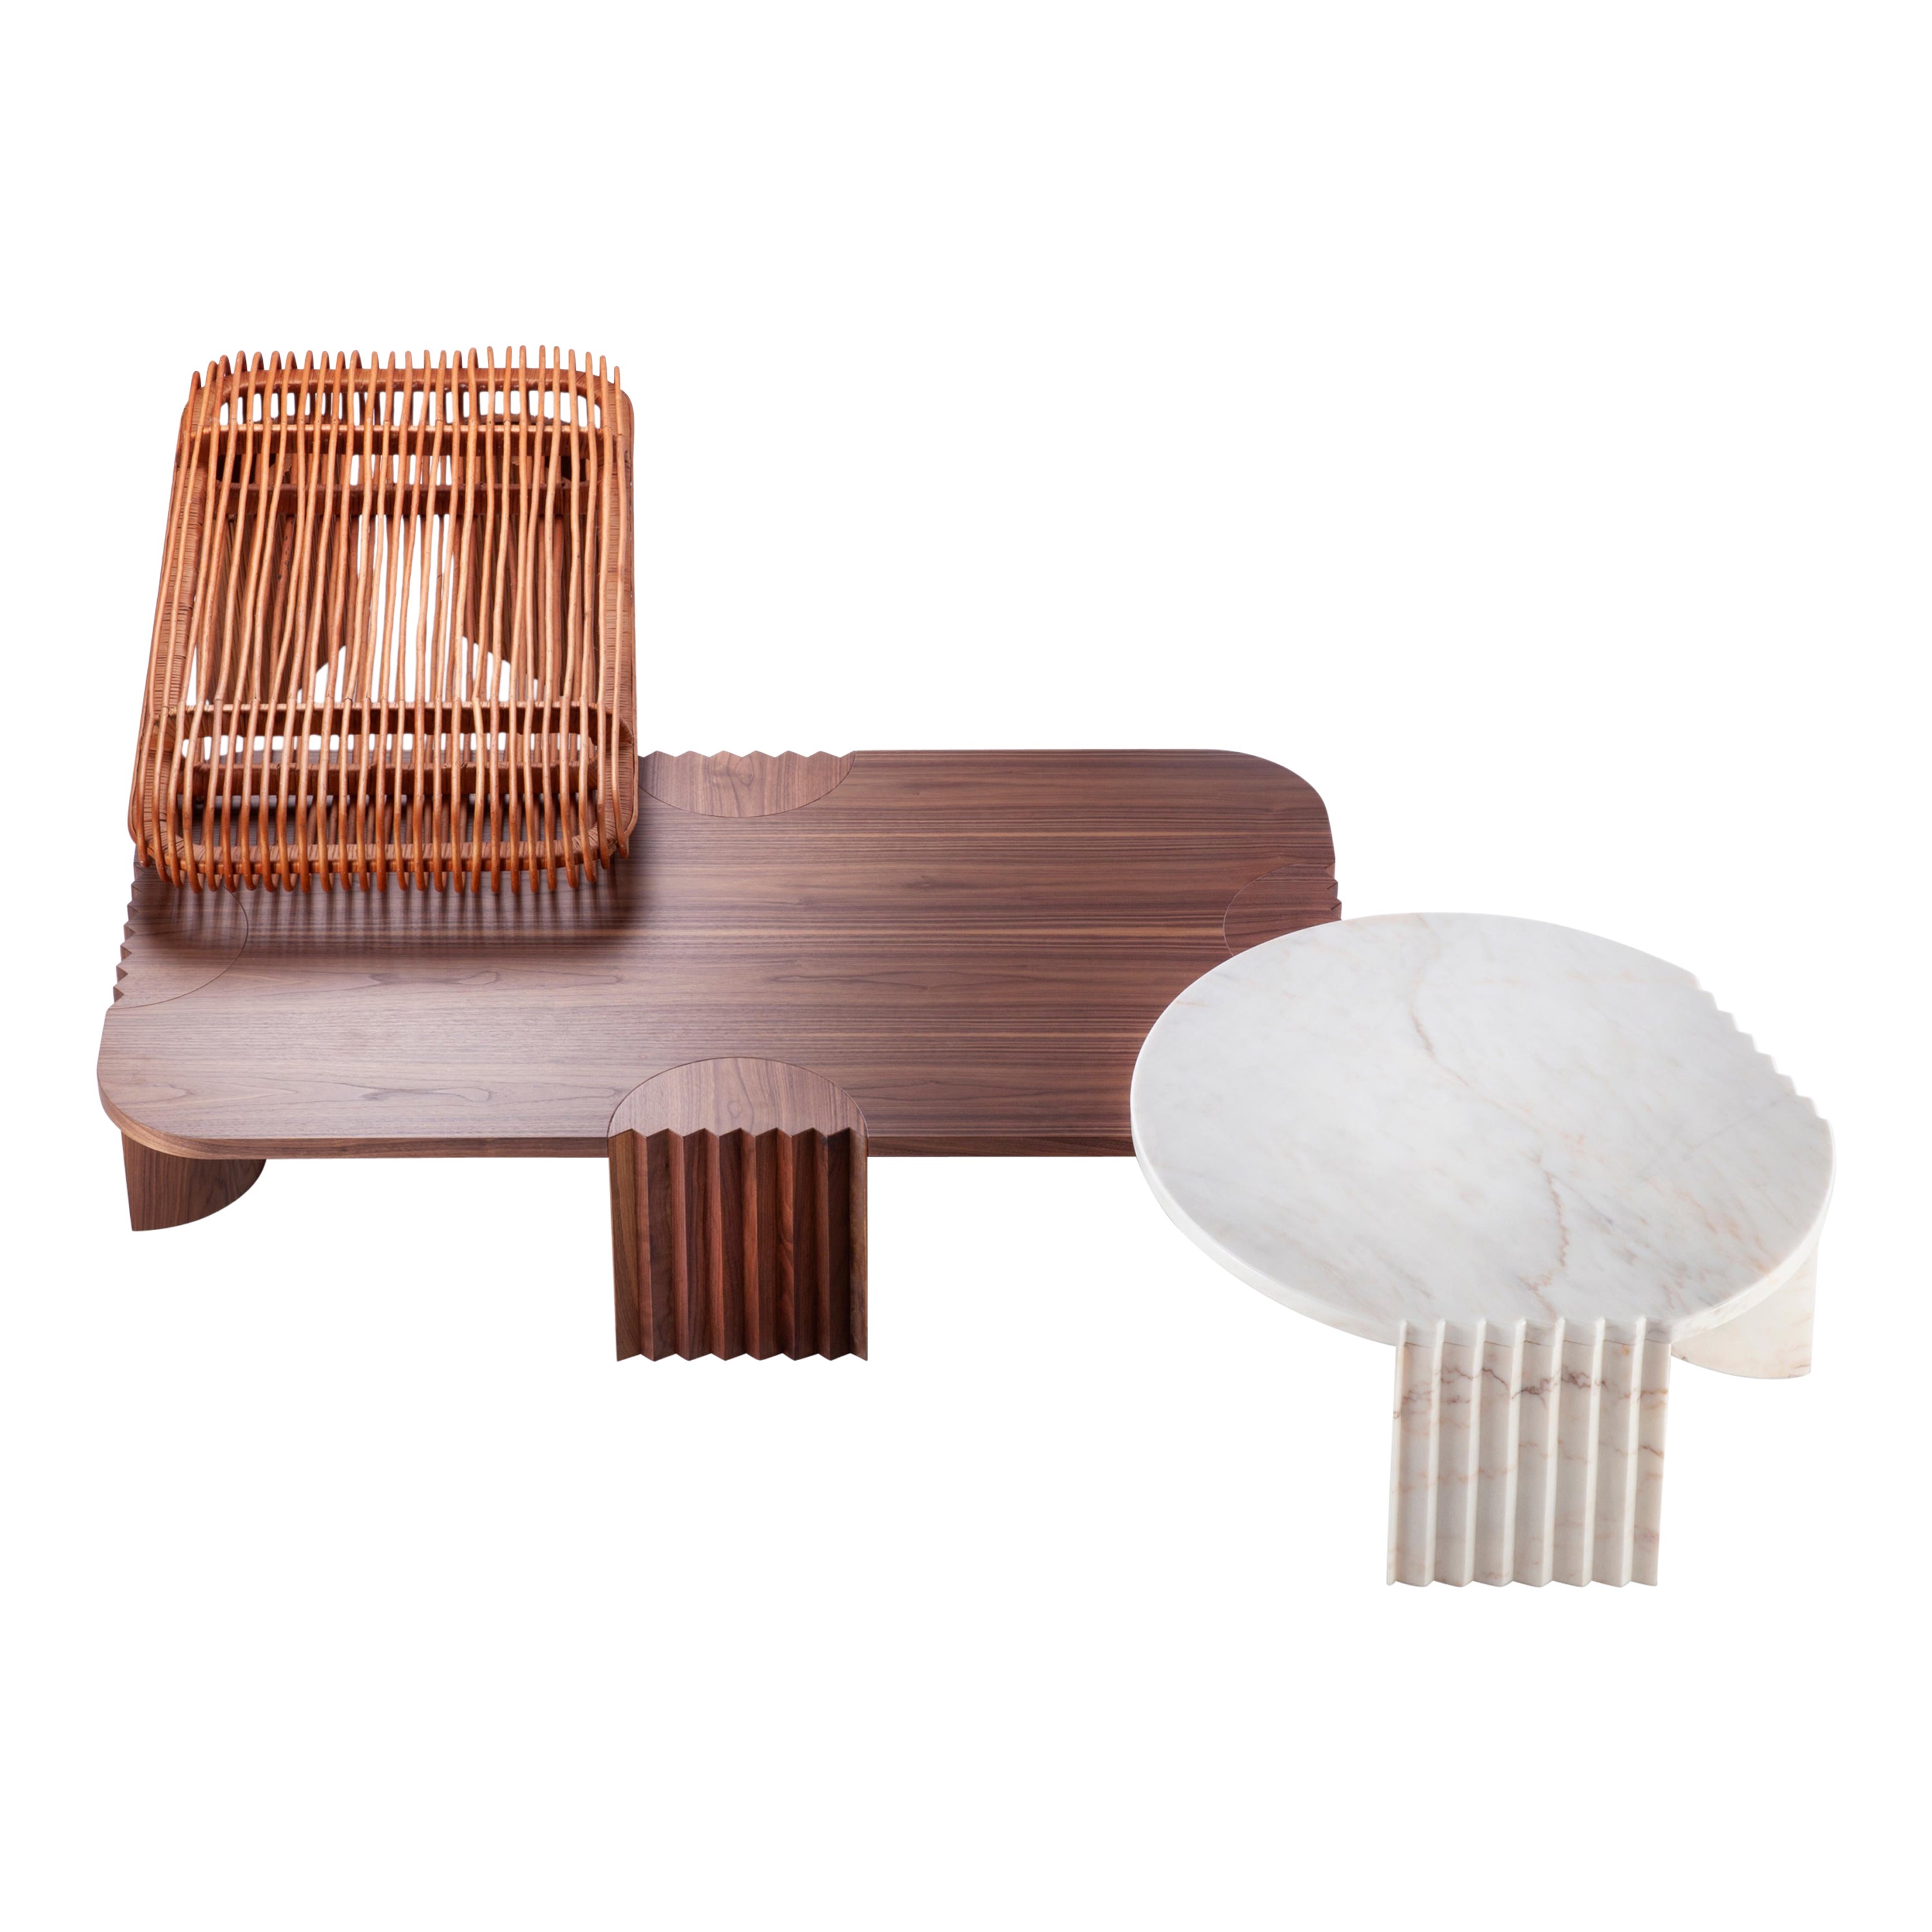 Table centrale unique en bois biseauté par Collector